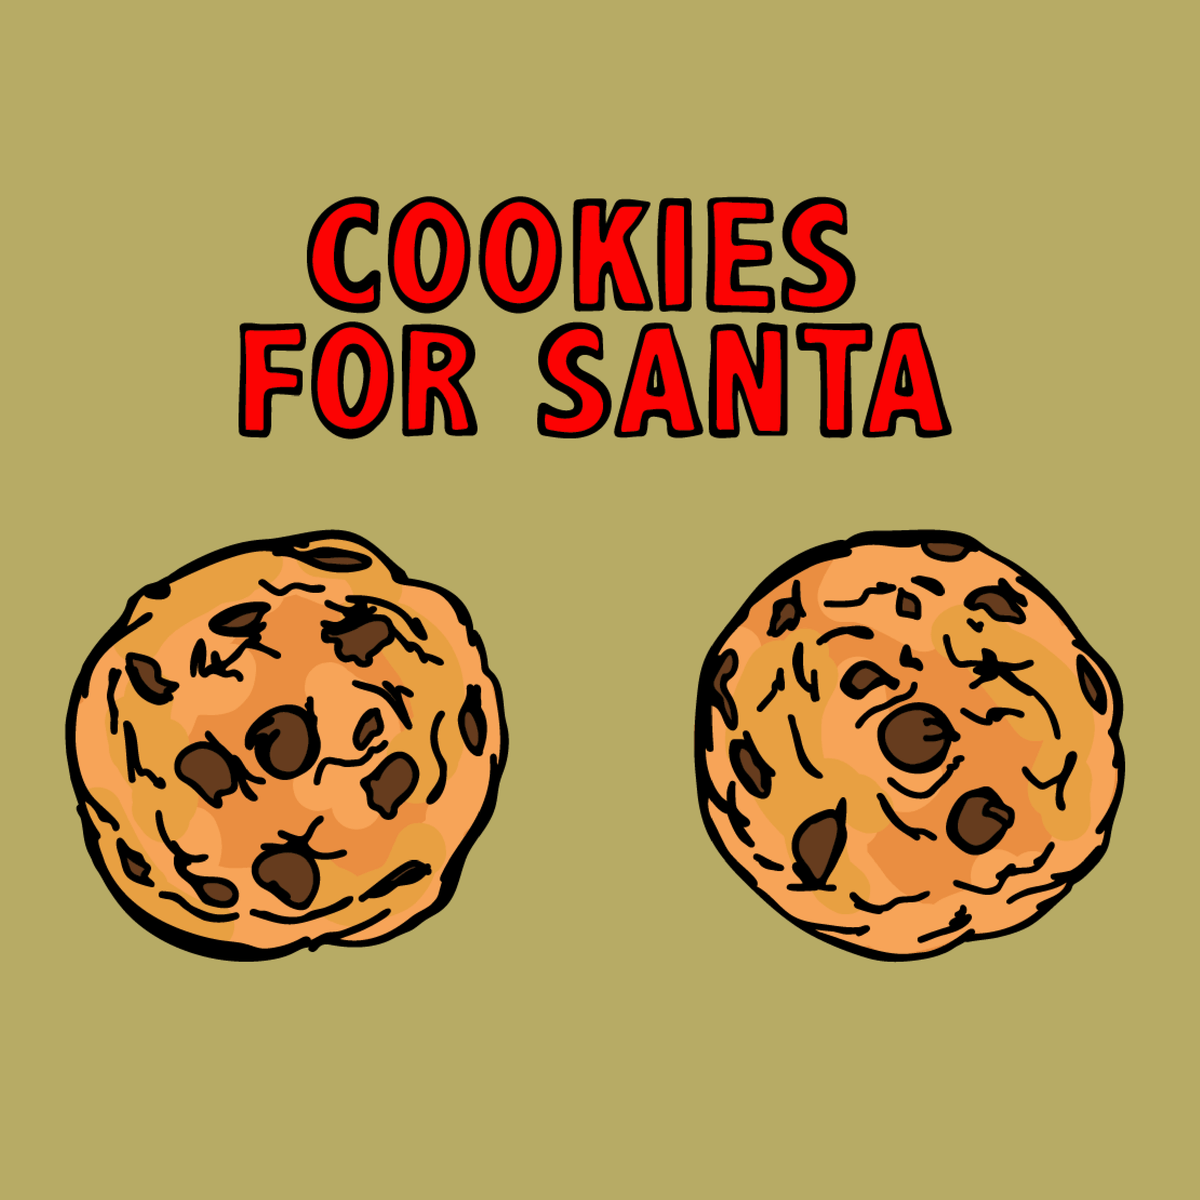 Cookies for Santa 🍪🎅 – Women's T Shirt